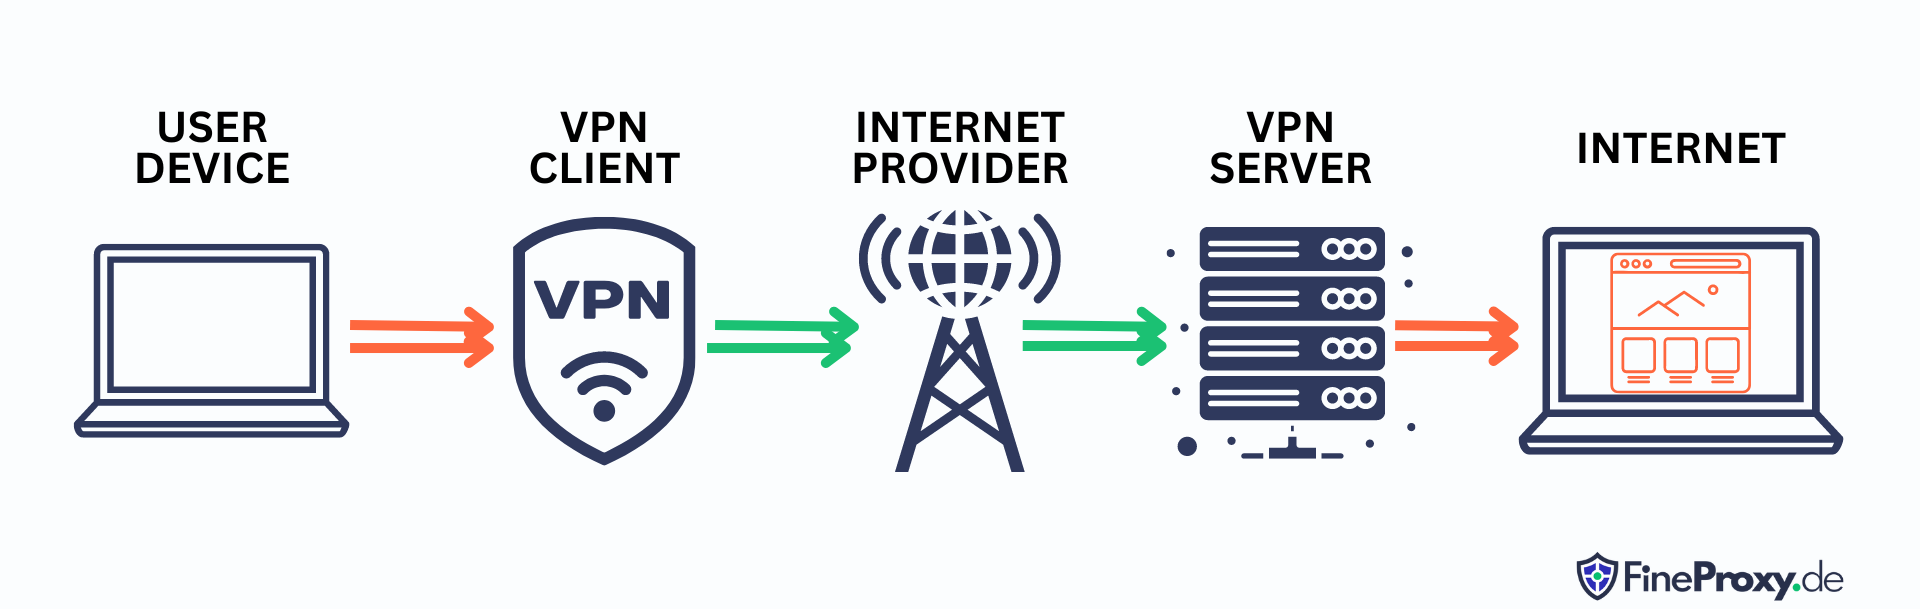 Как работает служба VPN?